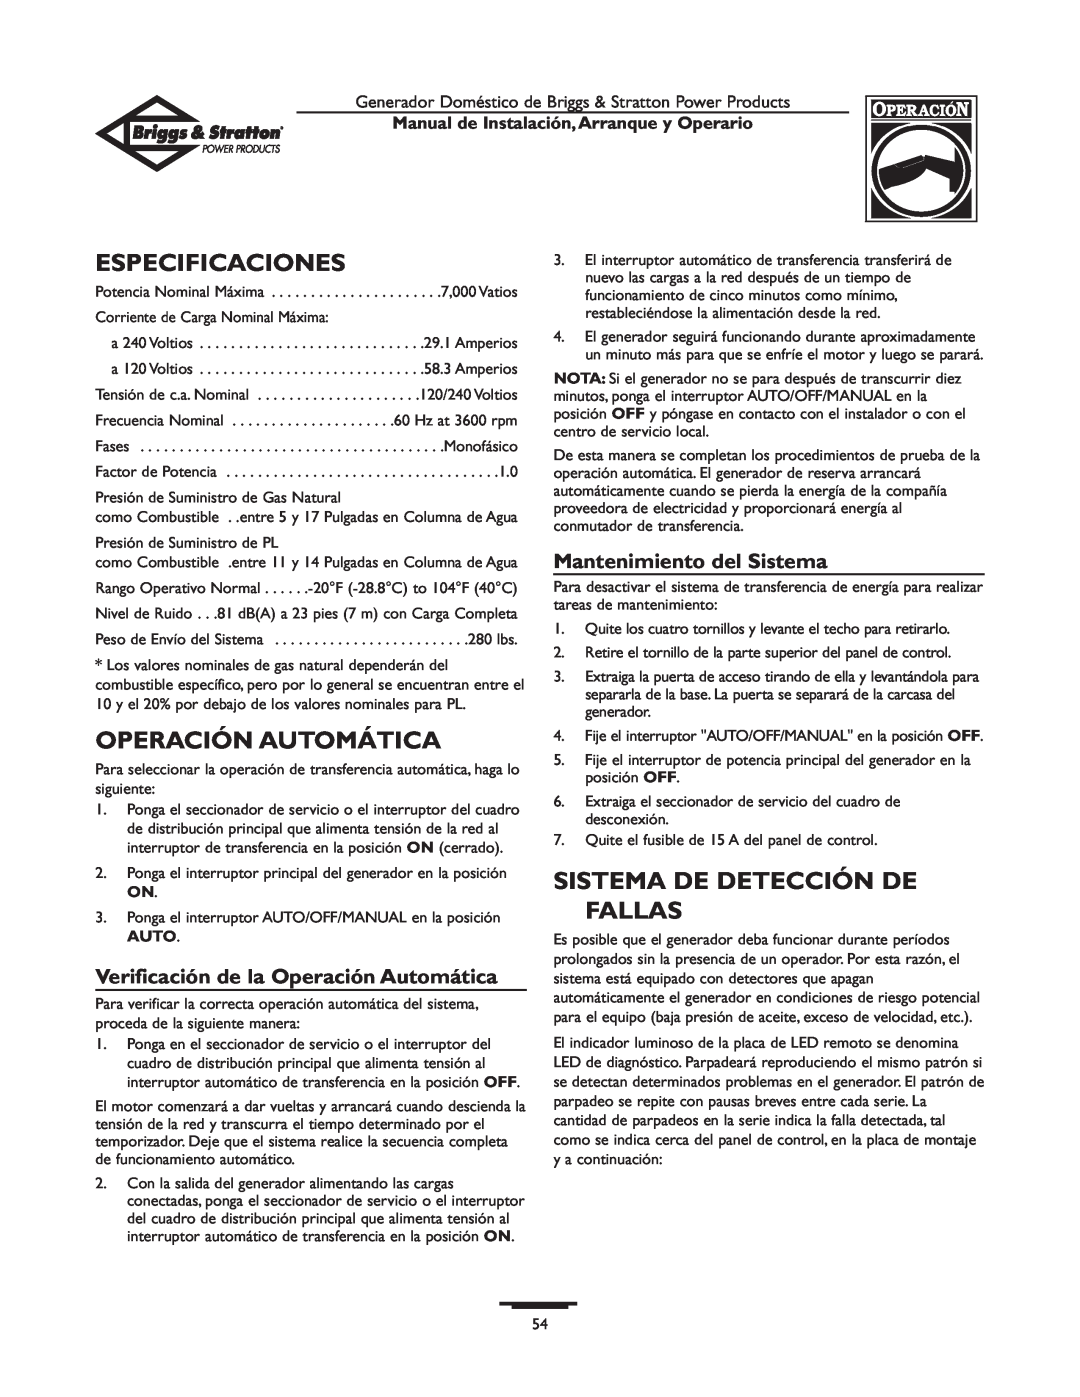 Briggs & Stratton 01897-0 manual Especificaciones, Operación Automática, Sistema De Detección De, Fallas 